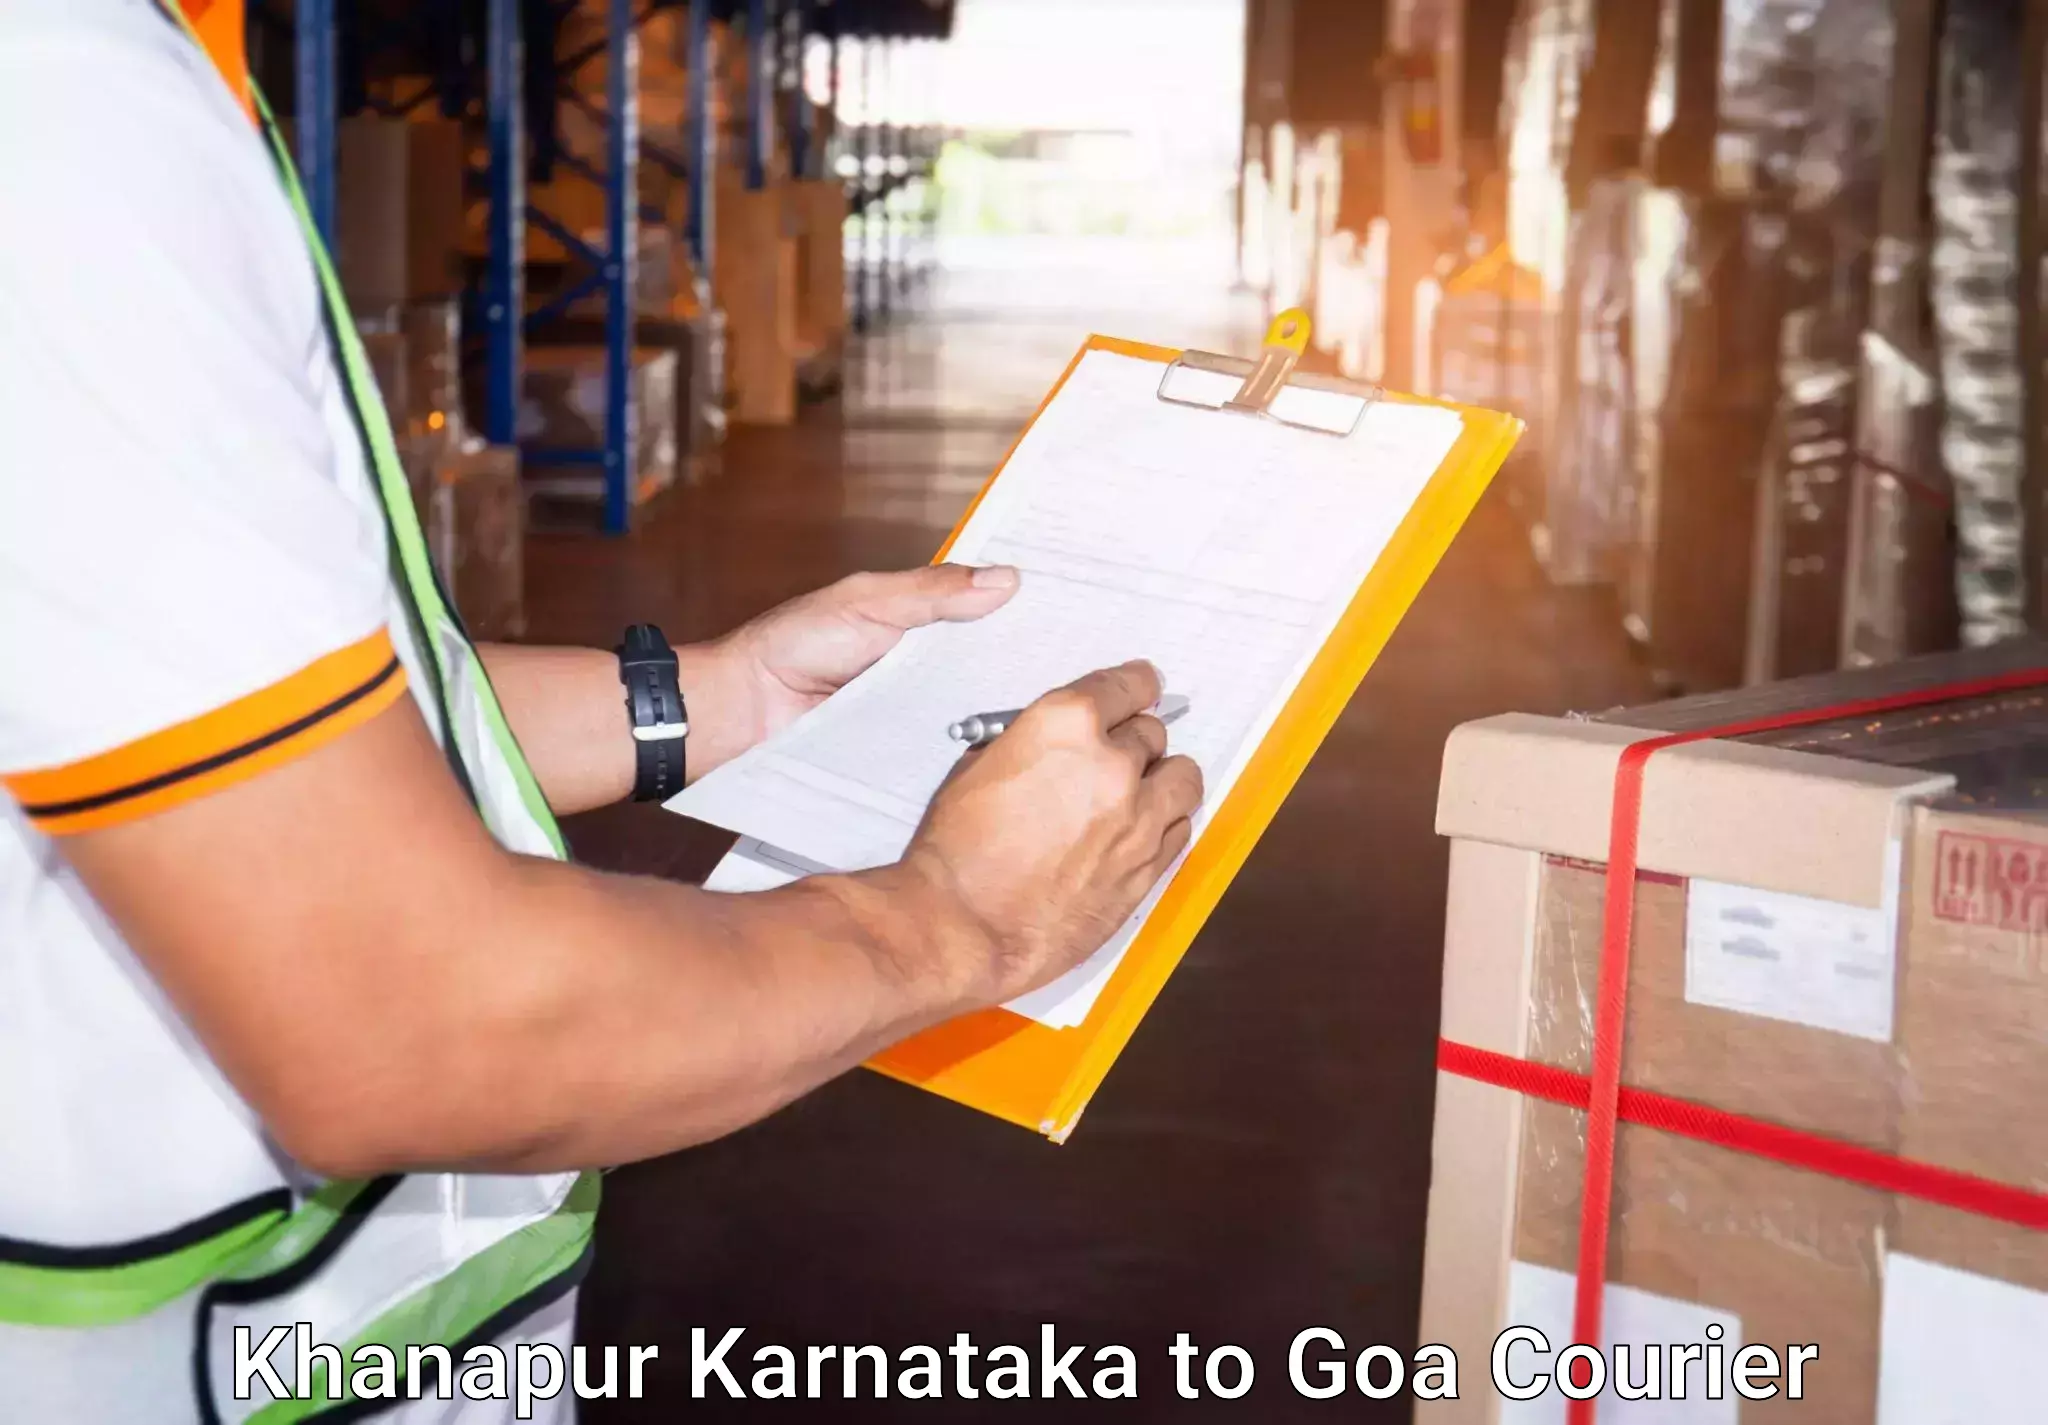 Baggage transport management Khanapur Karnataka to Ponda